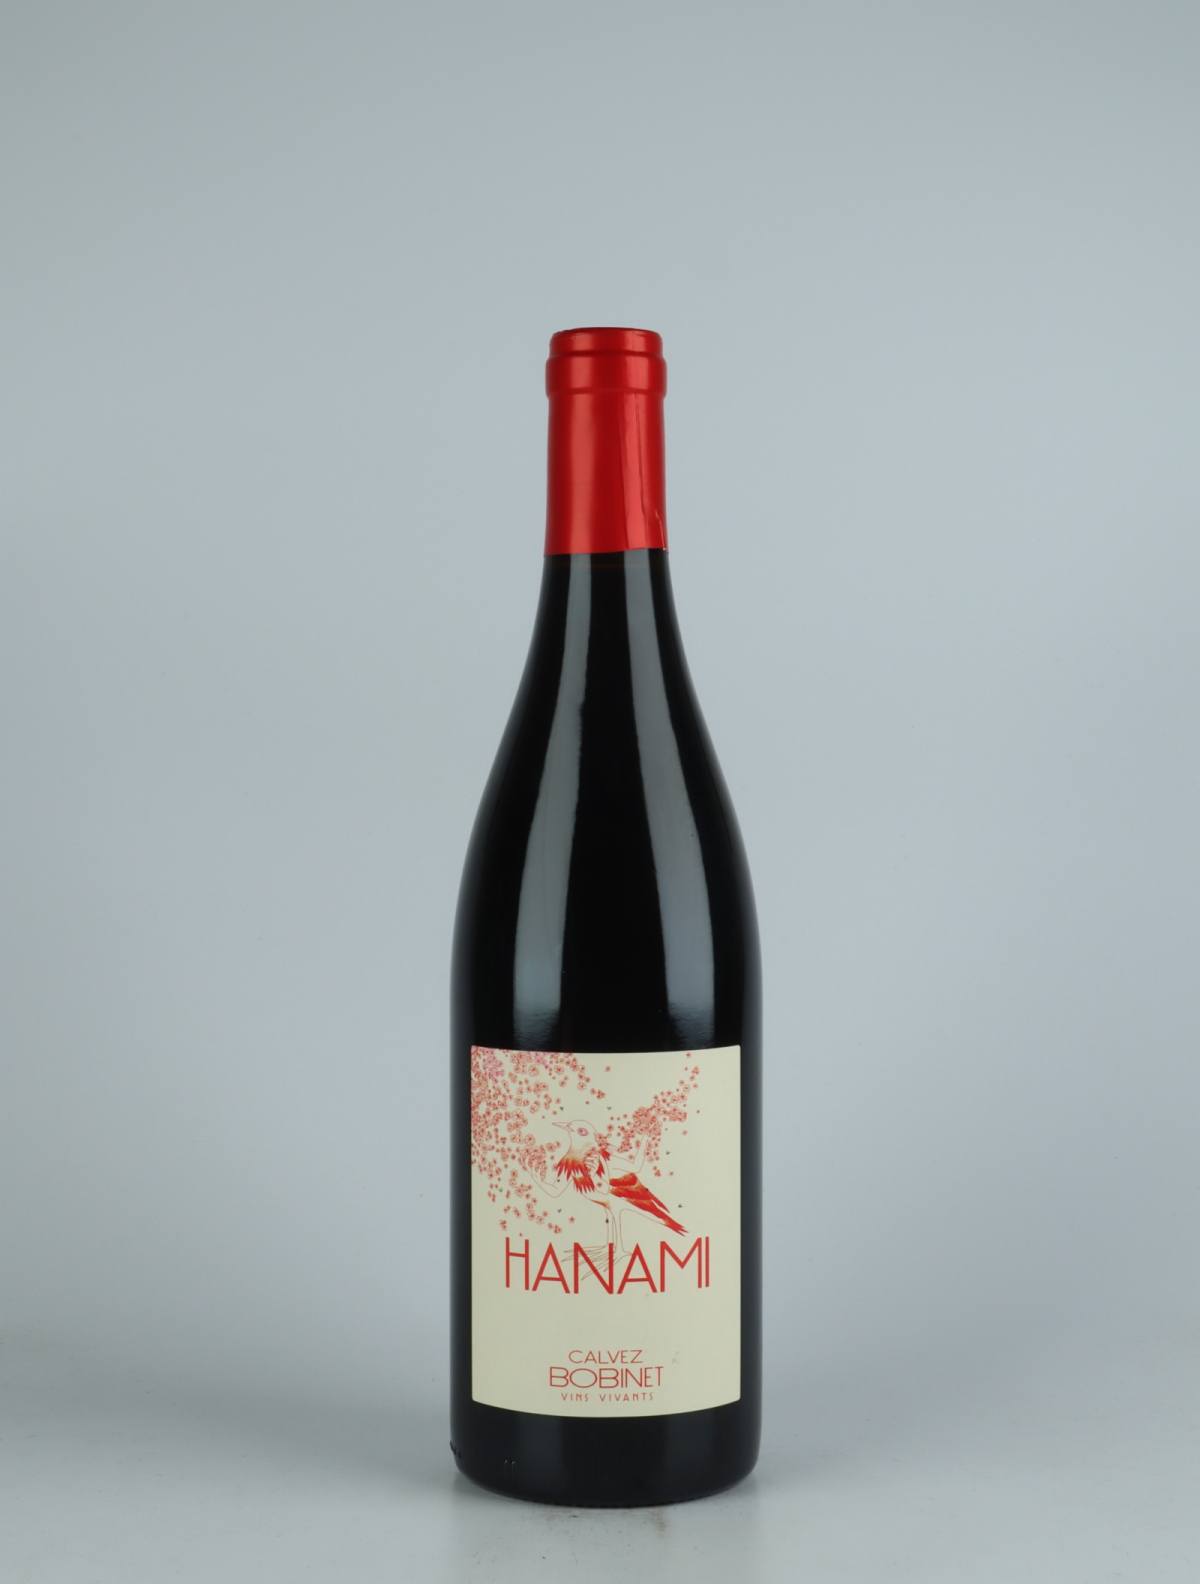 En flaske 2021 Saumur Rouge - Hanami Rødvin fra Domaine Bobinet, Loire i Frankrig